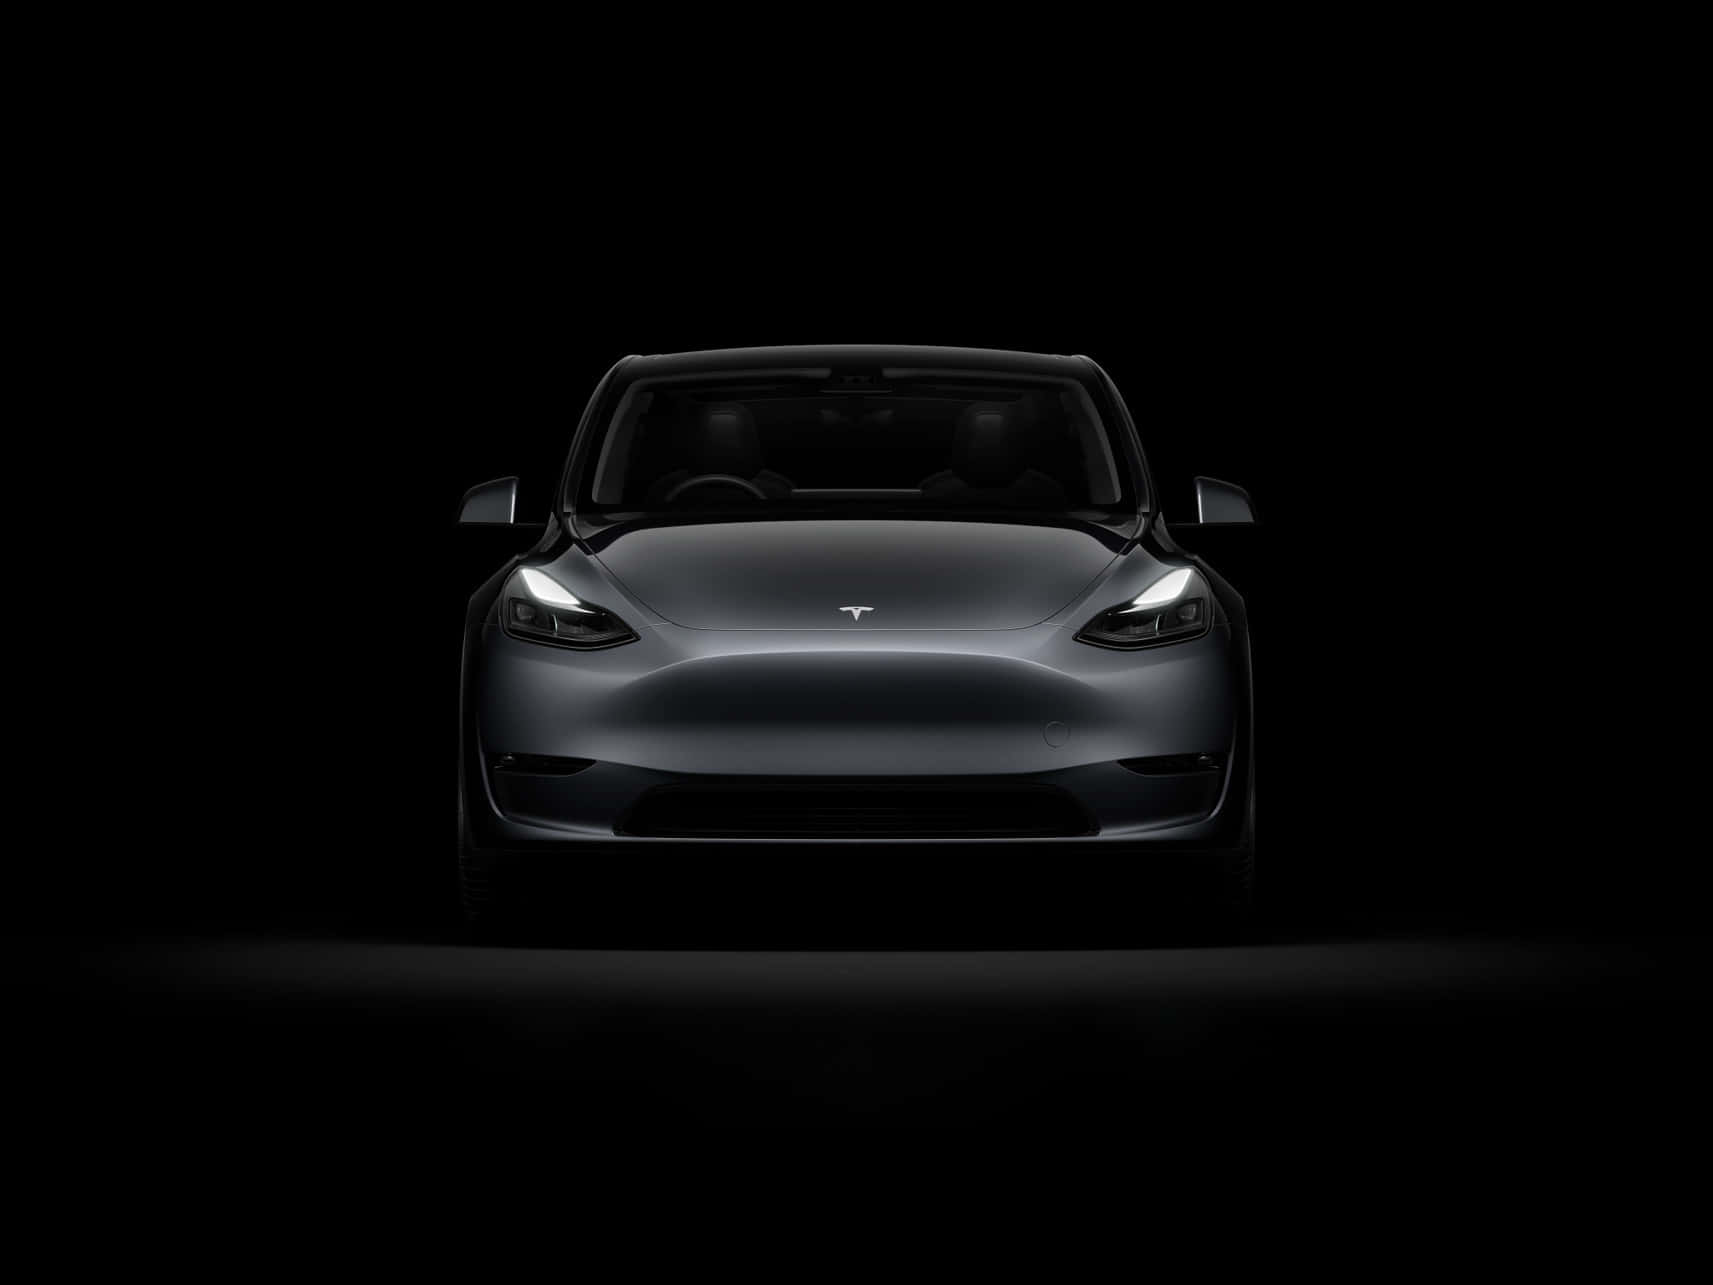 Teslamodel 3 - Inspirierend Die Zukunft Der Elektrofahrzeuge